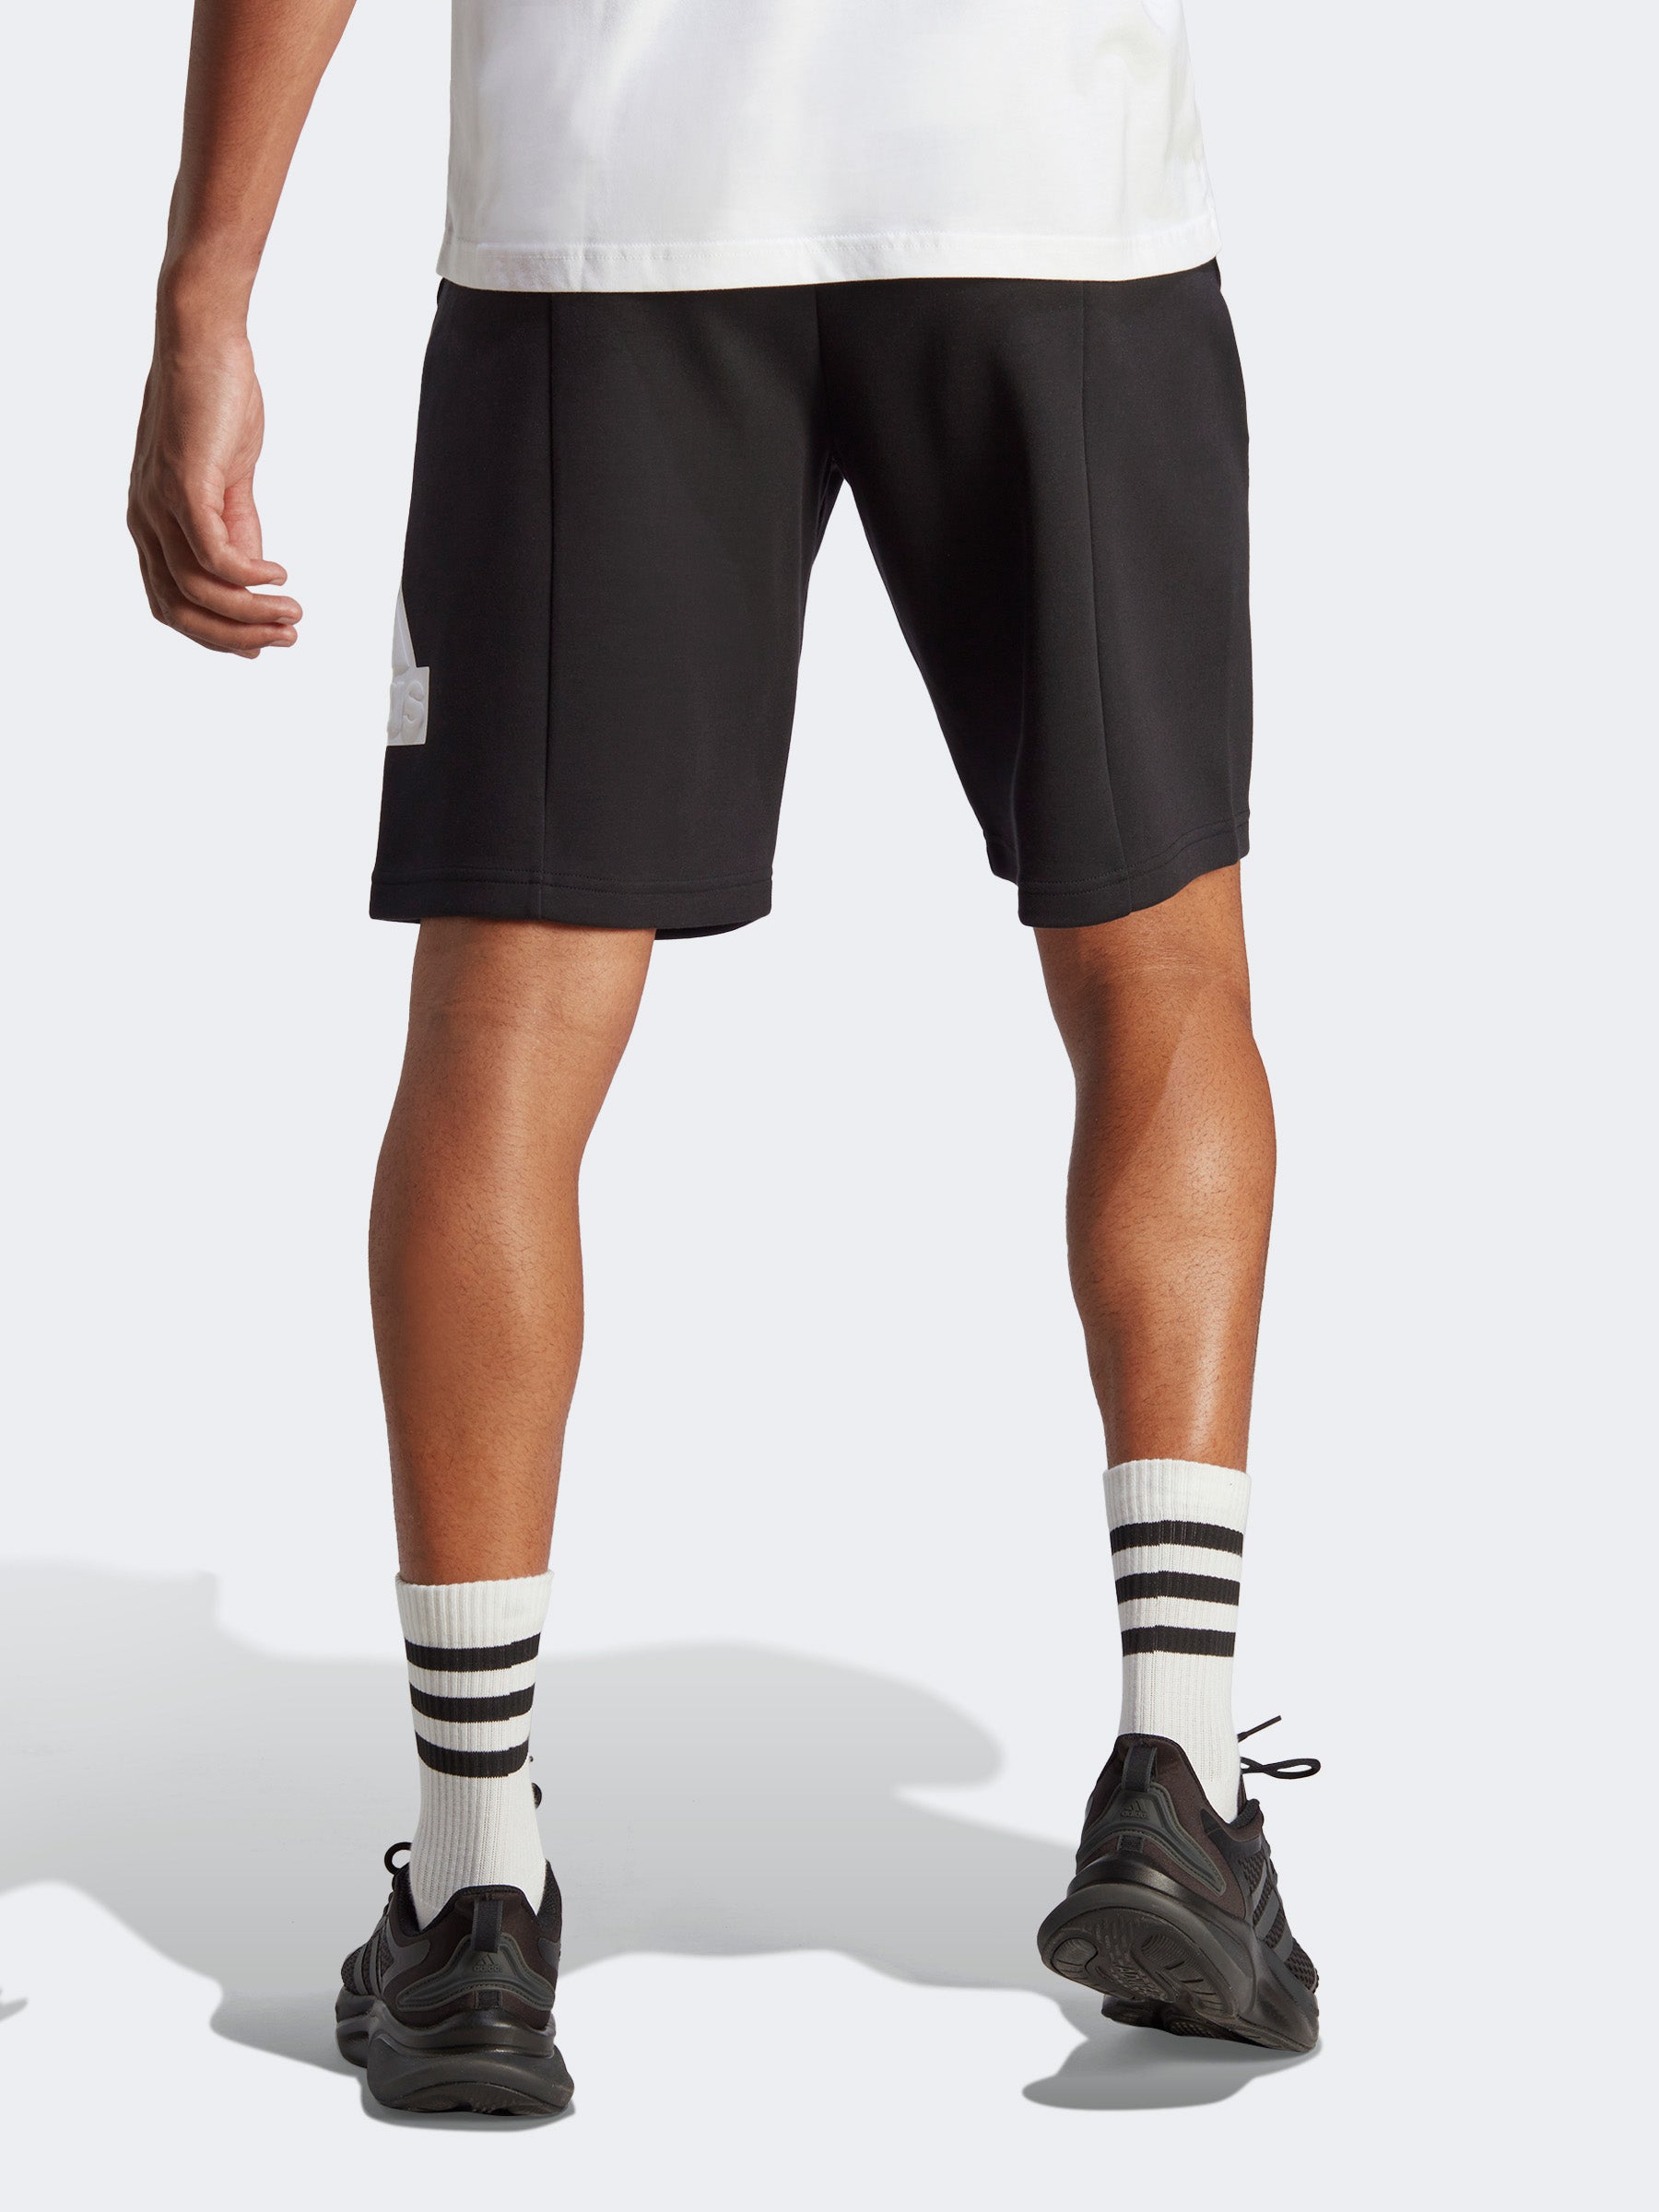 מכנסיים קצרים עם הדפס לוגו המותג- adidas performance|אדידס פרפורמנס